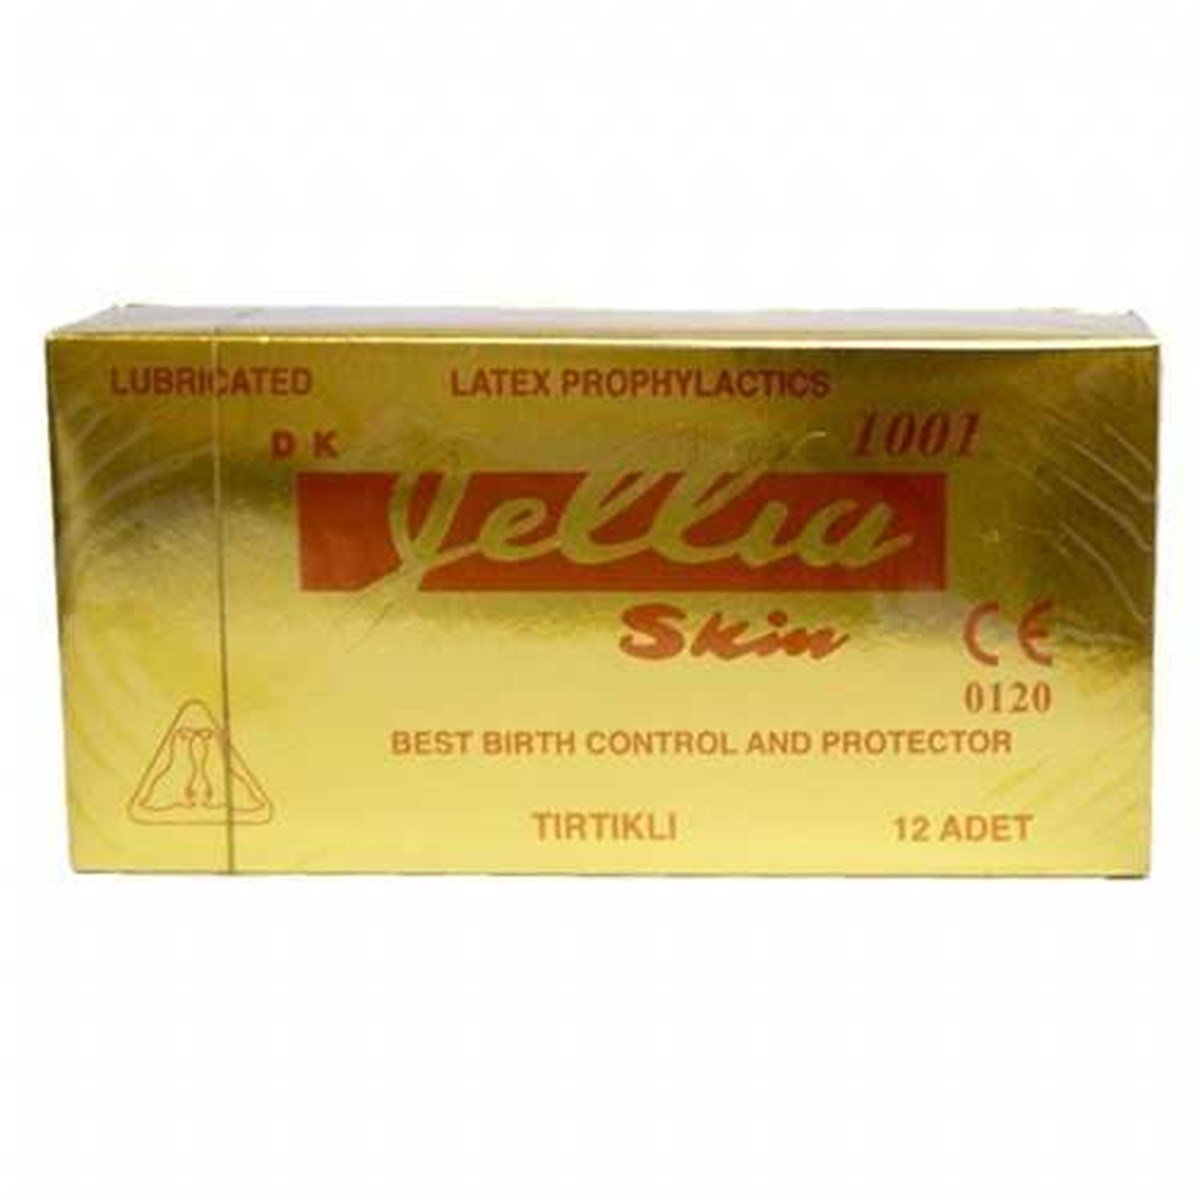 Jellia Skin Prezervatif Tırtıklı (12 adet) Fiyatları | Dermosiparis.com